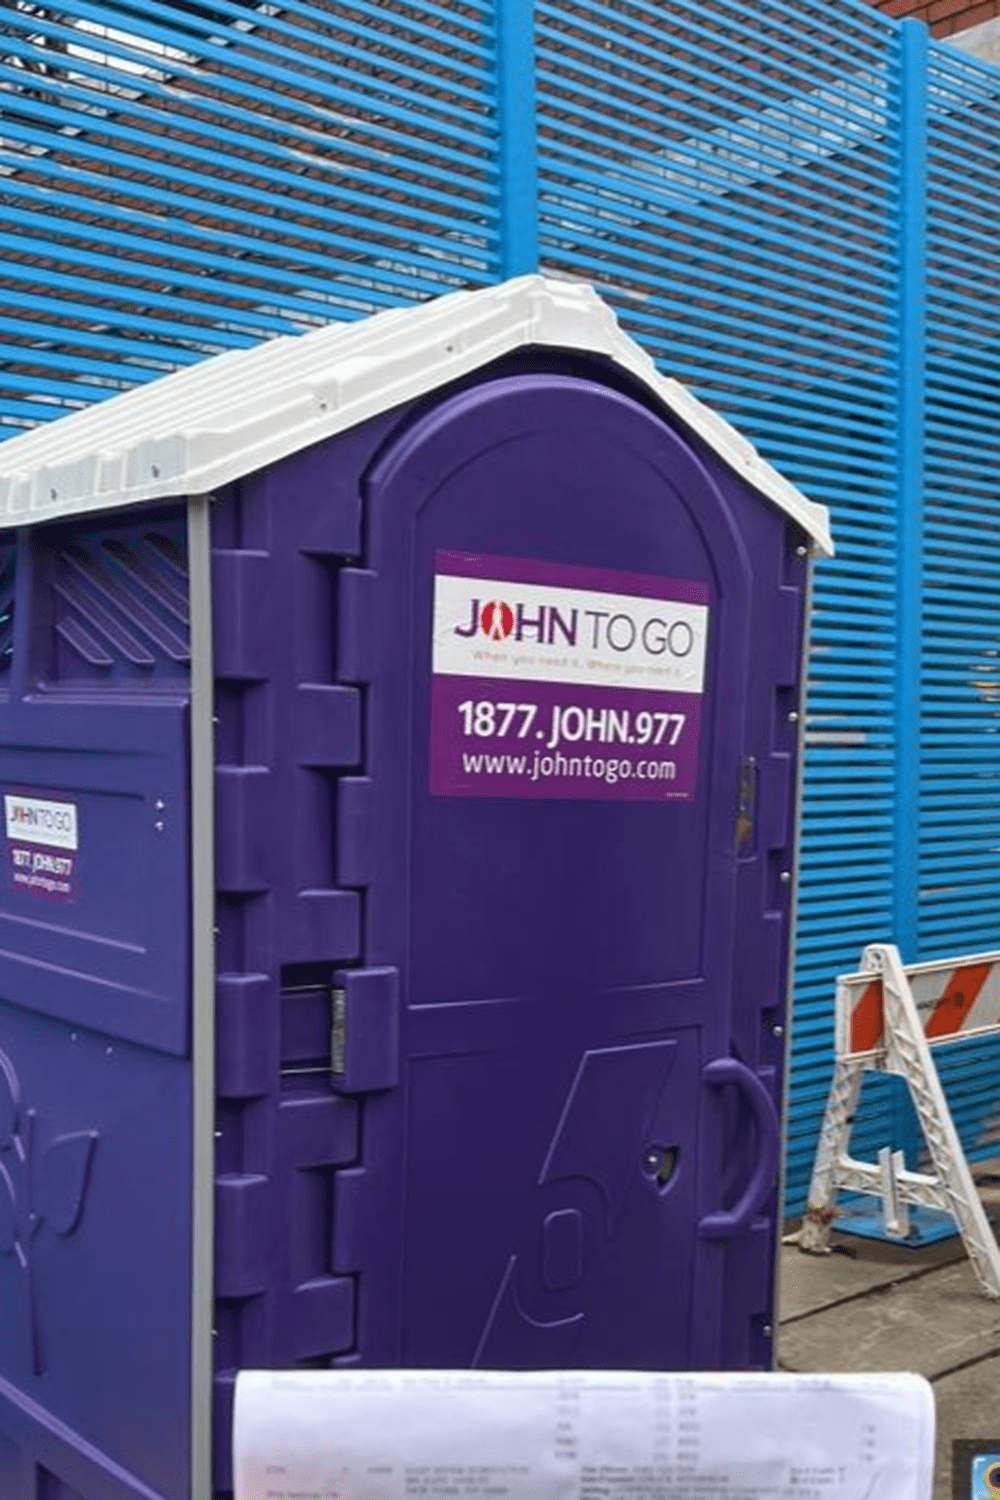 Porta john for construction sites near me